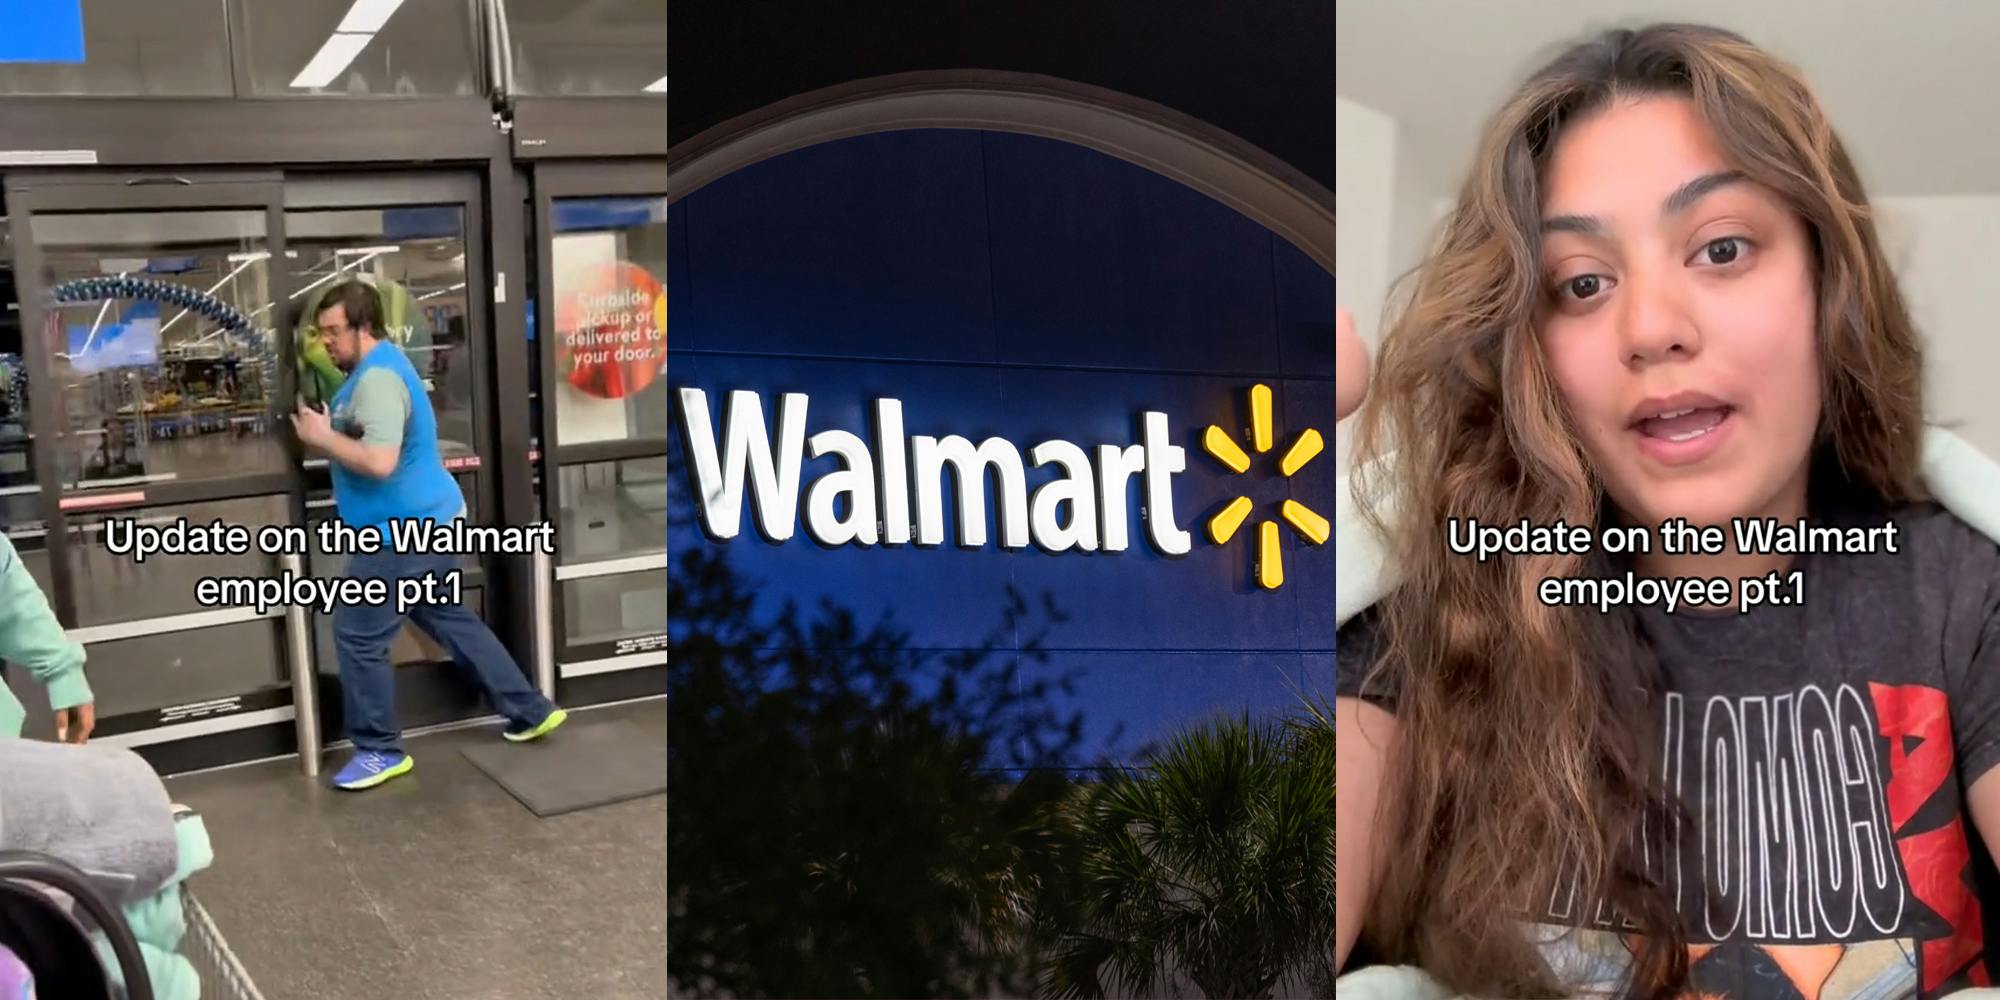 Walmart employee closing door with caption "Update on the Walmart employee pt.1" (l) Walmart sign at night (c) Walmart shopper speaking with caption "Update on the Walmart employee pt.1" (r)